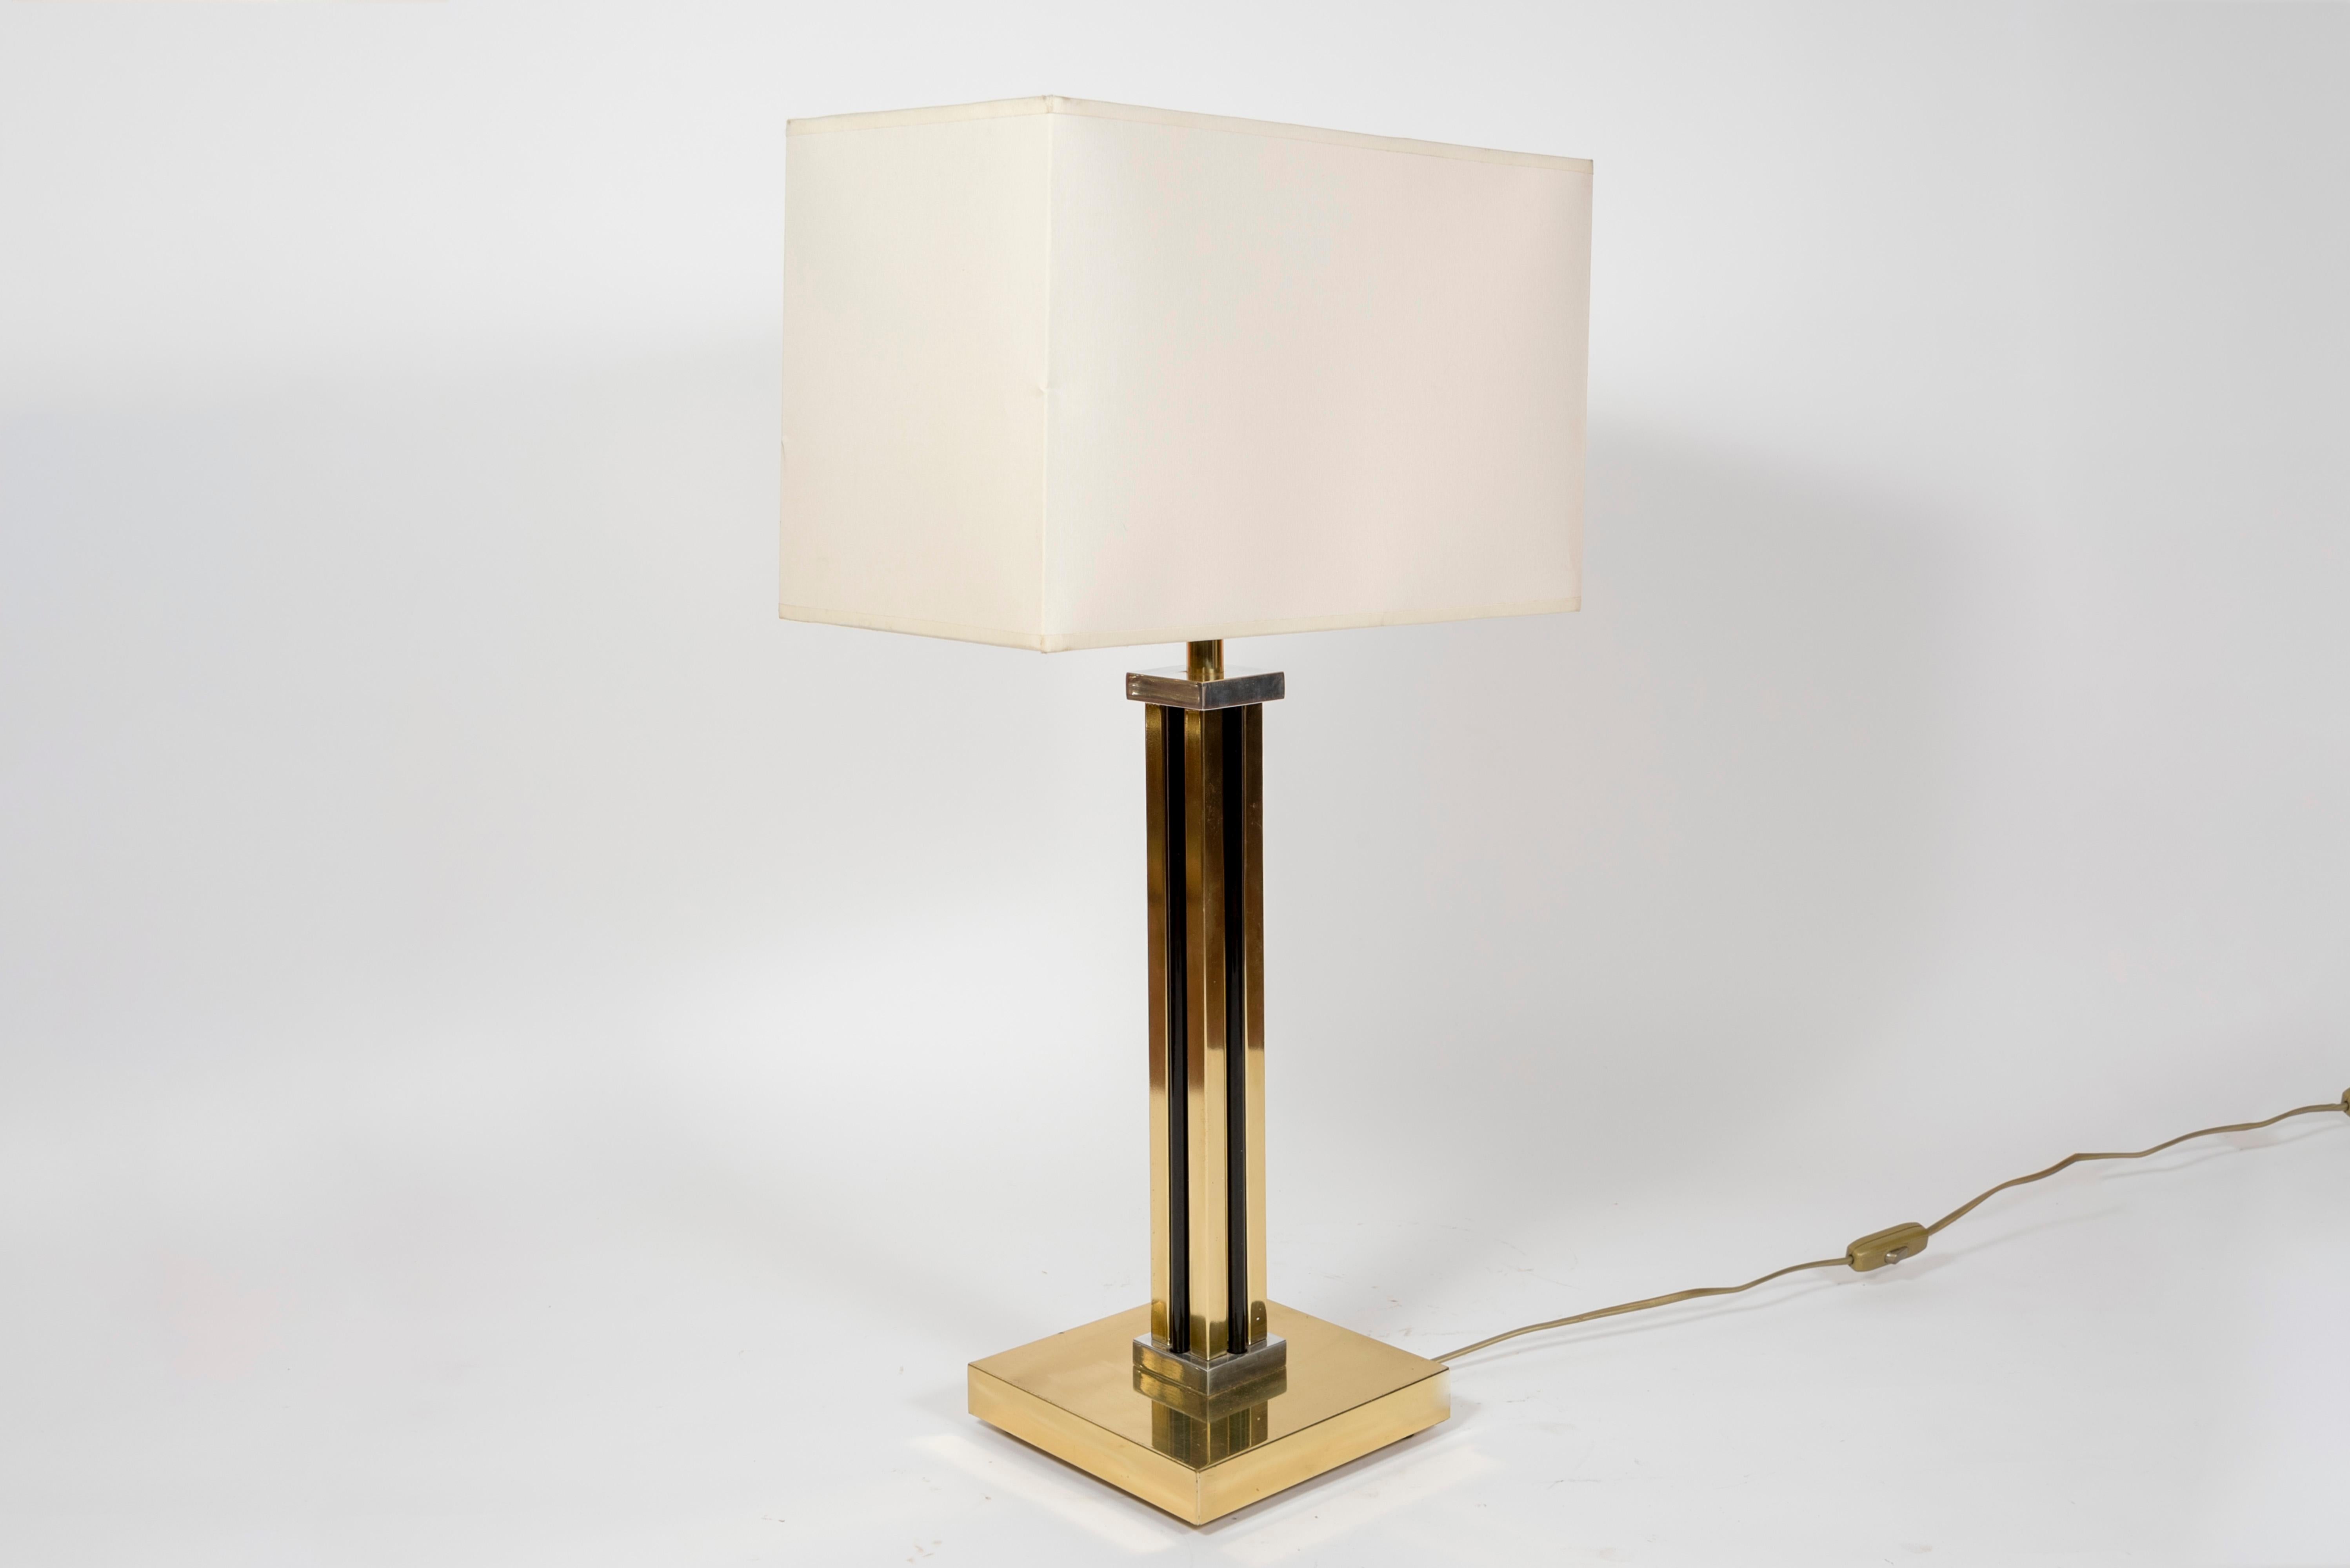 Paire de lampes de table dans le style d'Archimede Seguso,
Italie,
vers 1980
Dimensions données sans ombre
Aucune ombre n'est prévue.